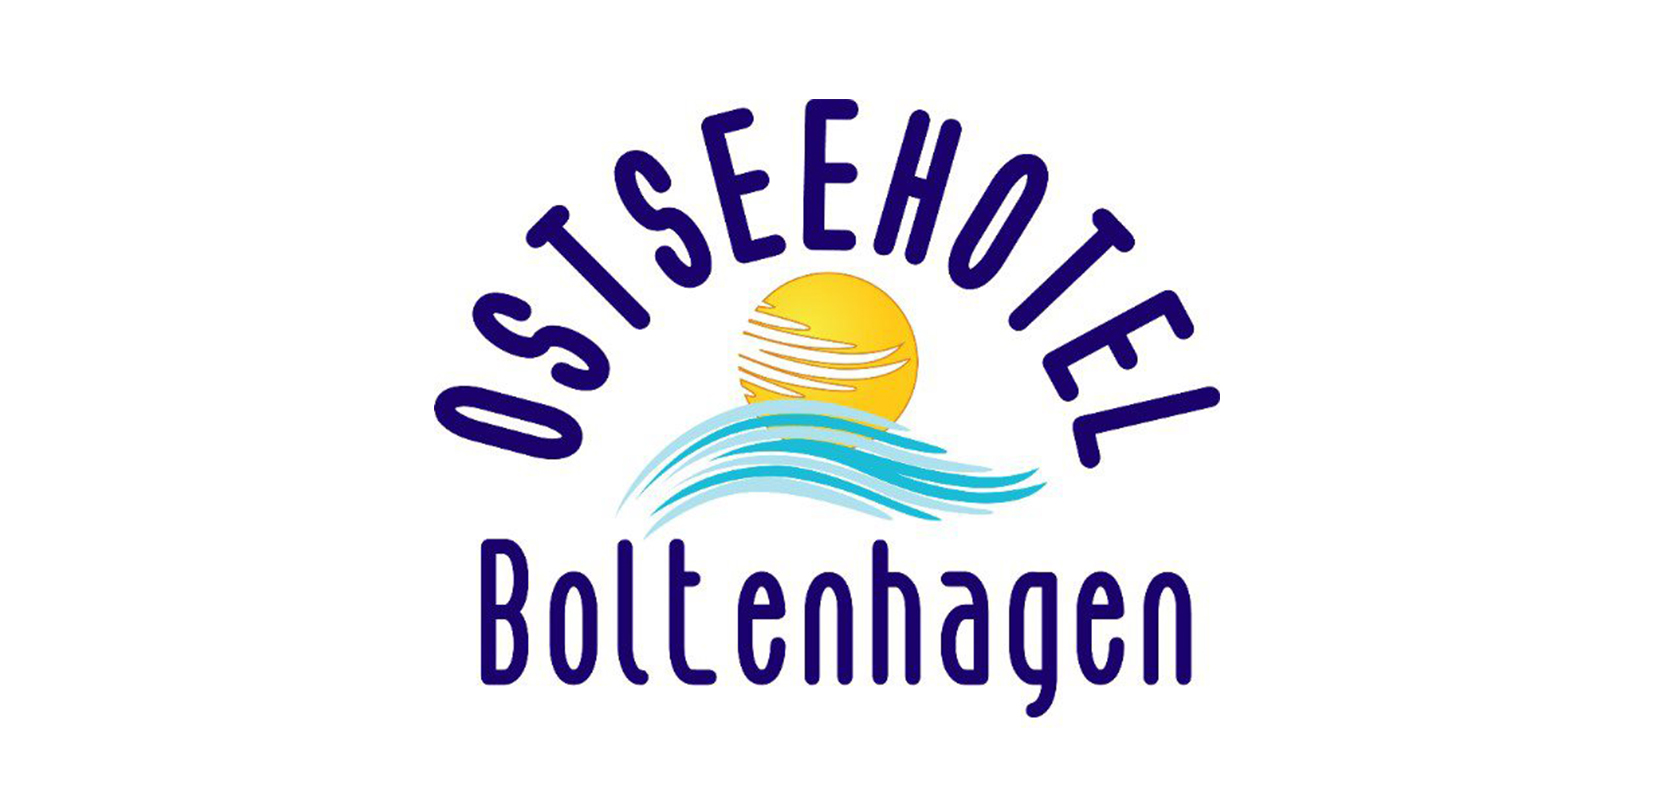 Ostseehotel Boltenhagen